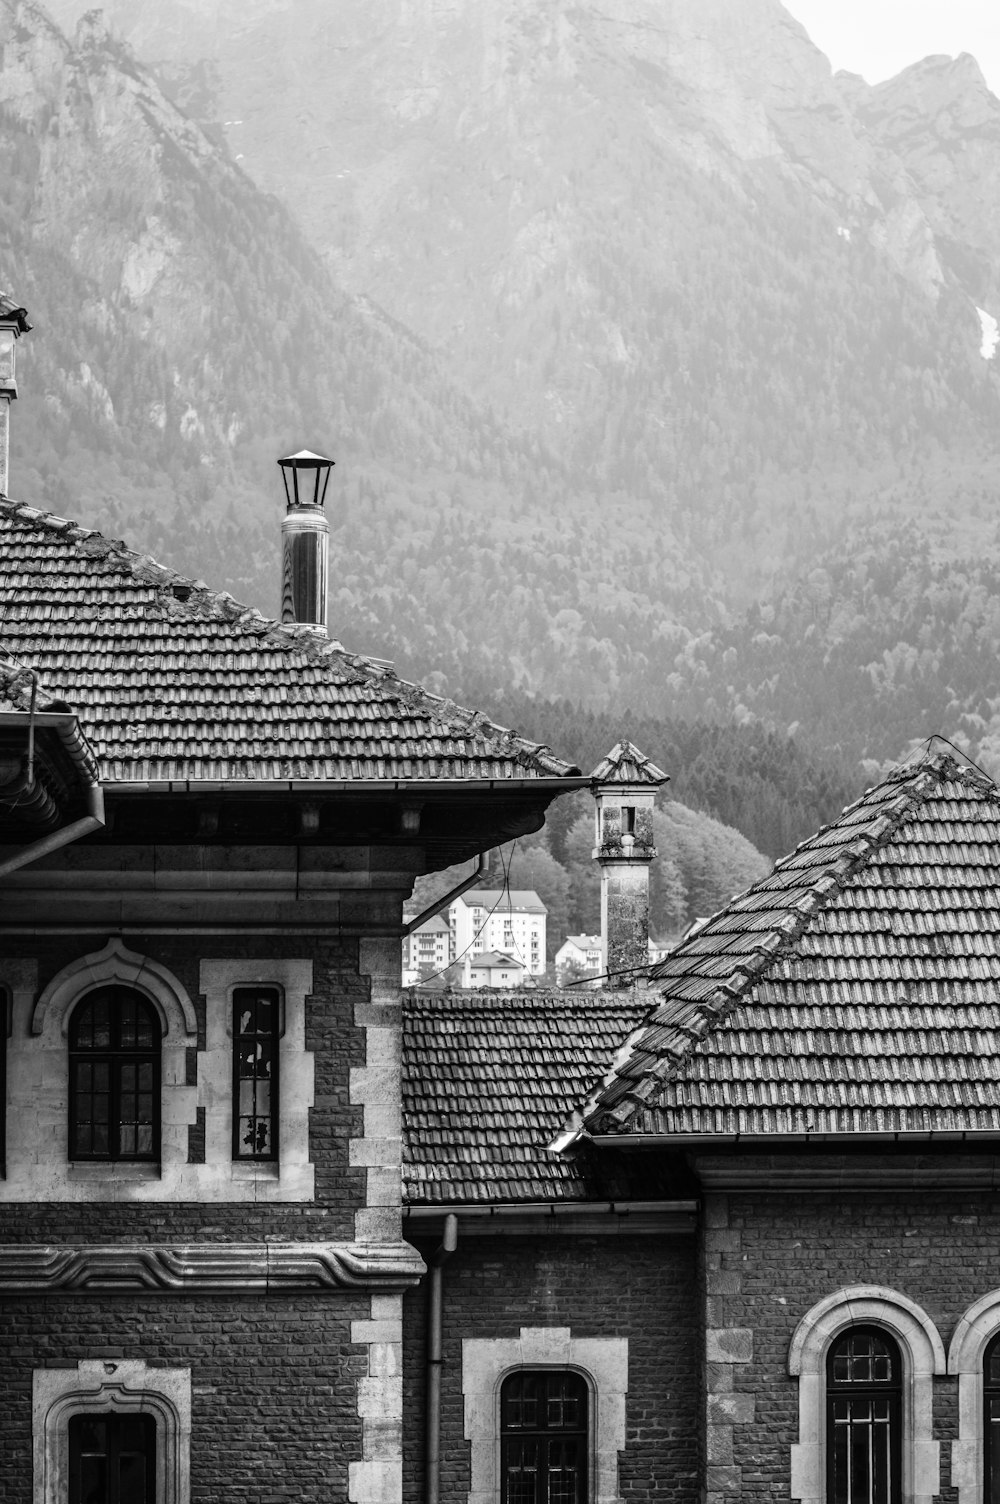 Photographie en niveaux de gris d’une maison près de la montagne